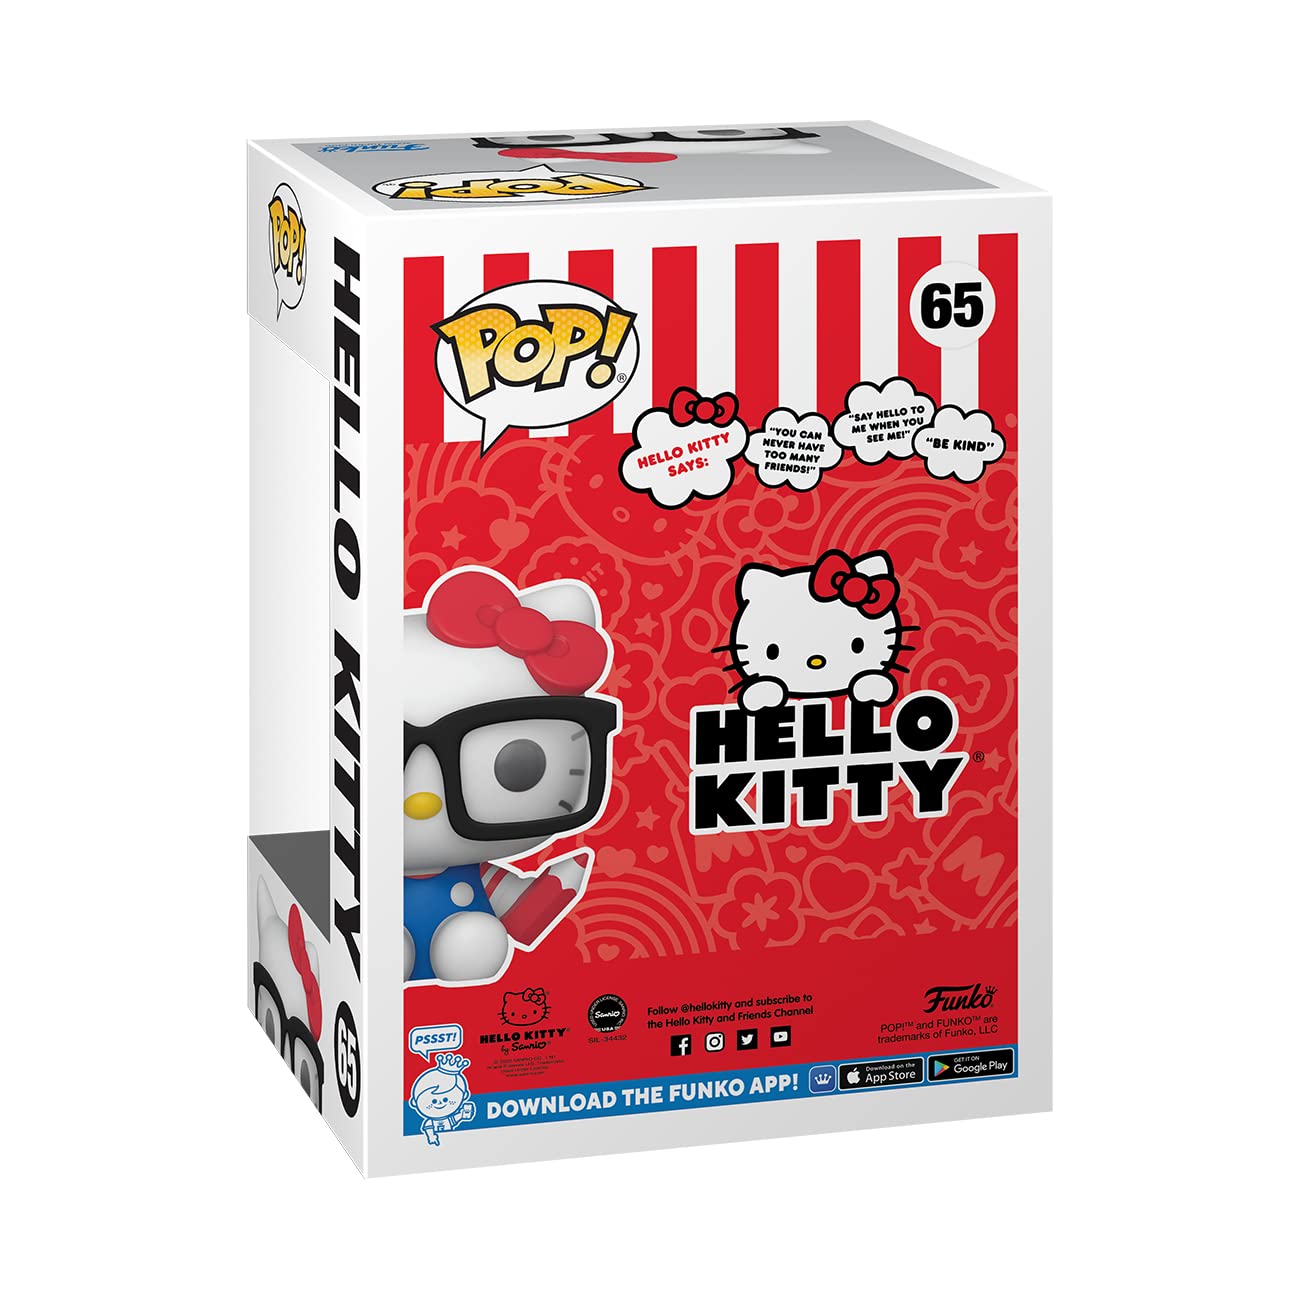 Funko Pop! Hello Kitty Nerd